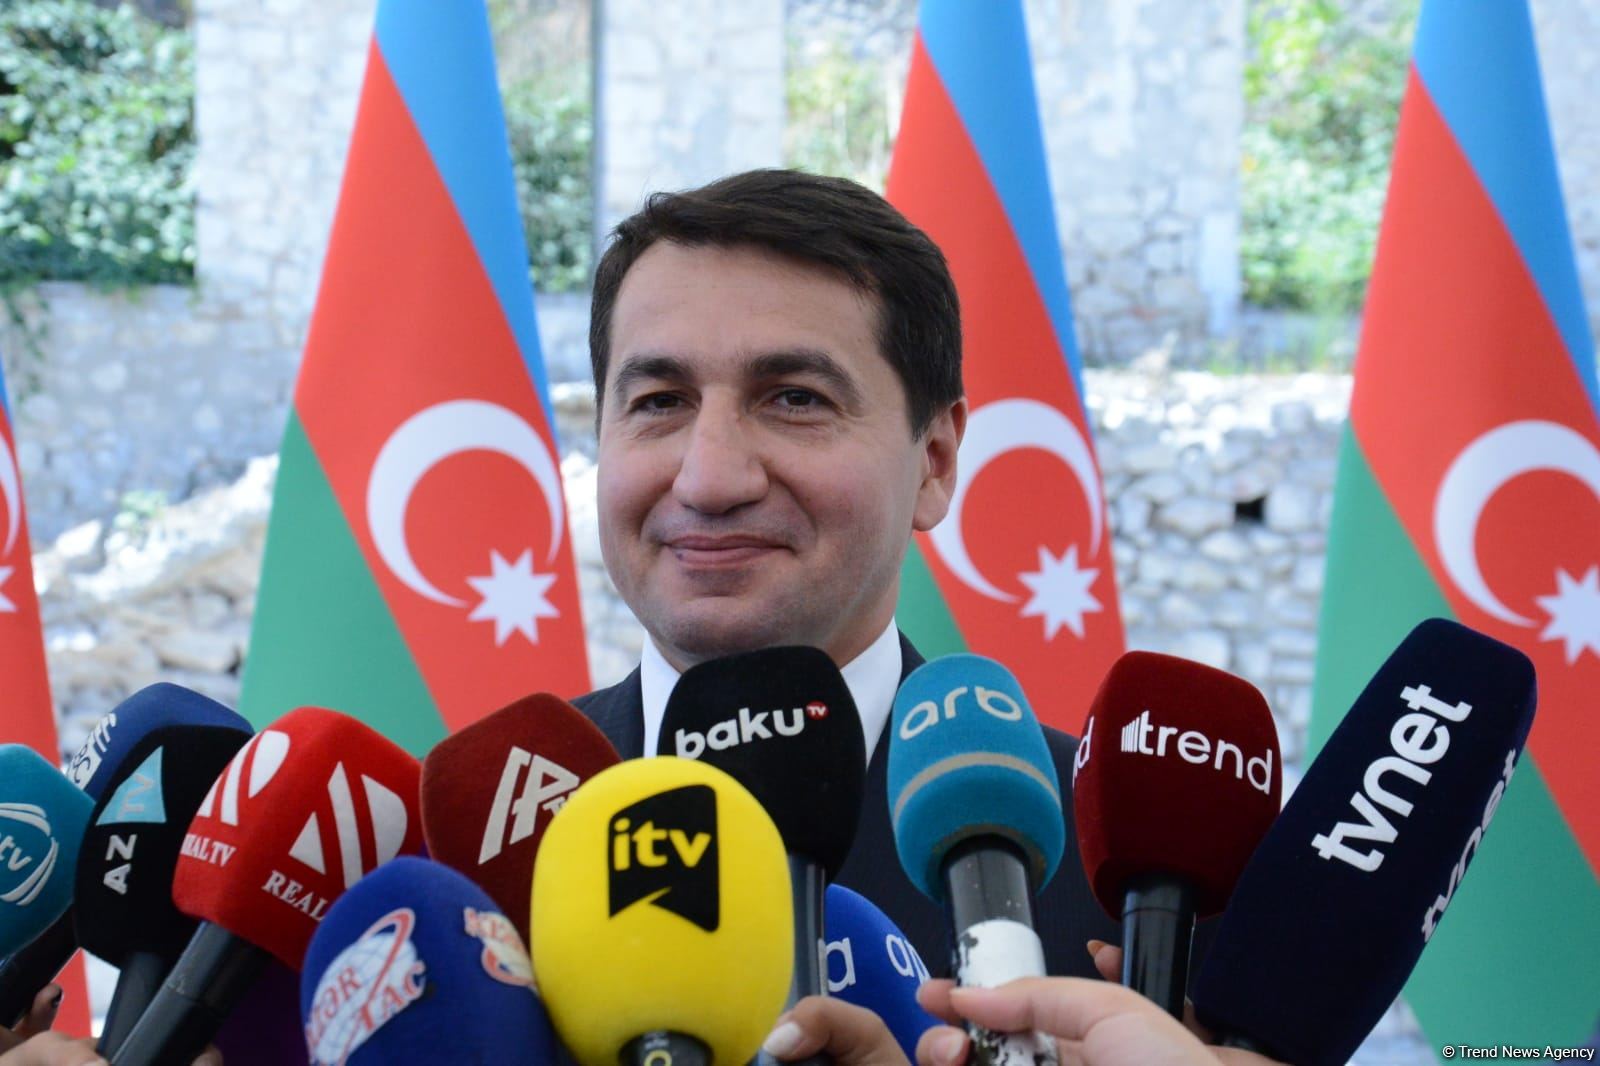 Послы Франции и США открыто проигнорировали приглашение Азербайджана - Хикмет Гаджиев